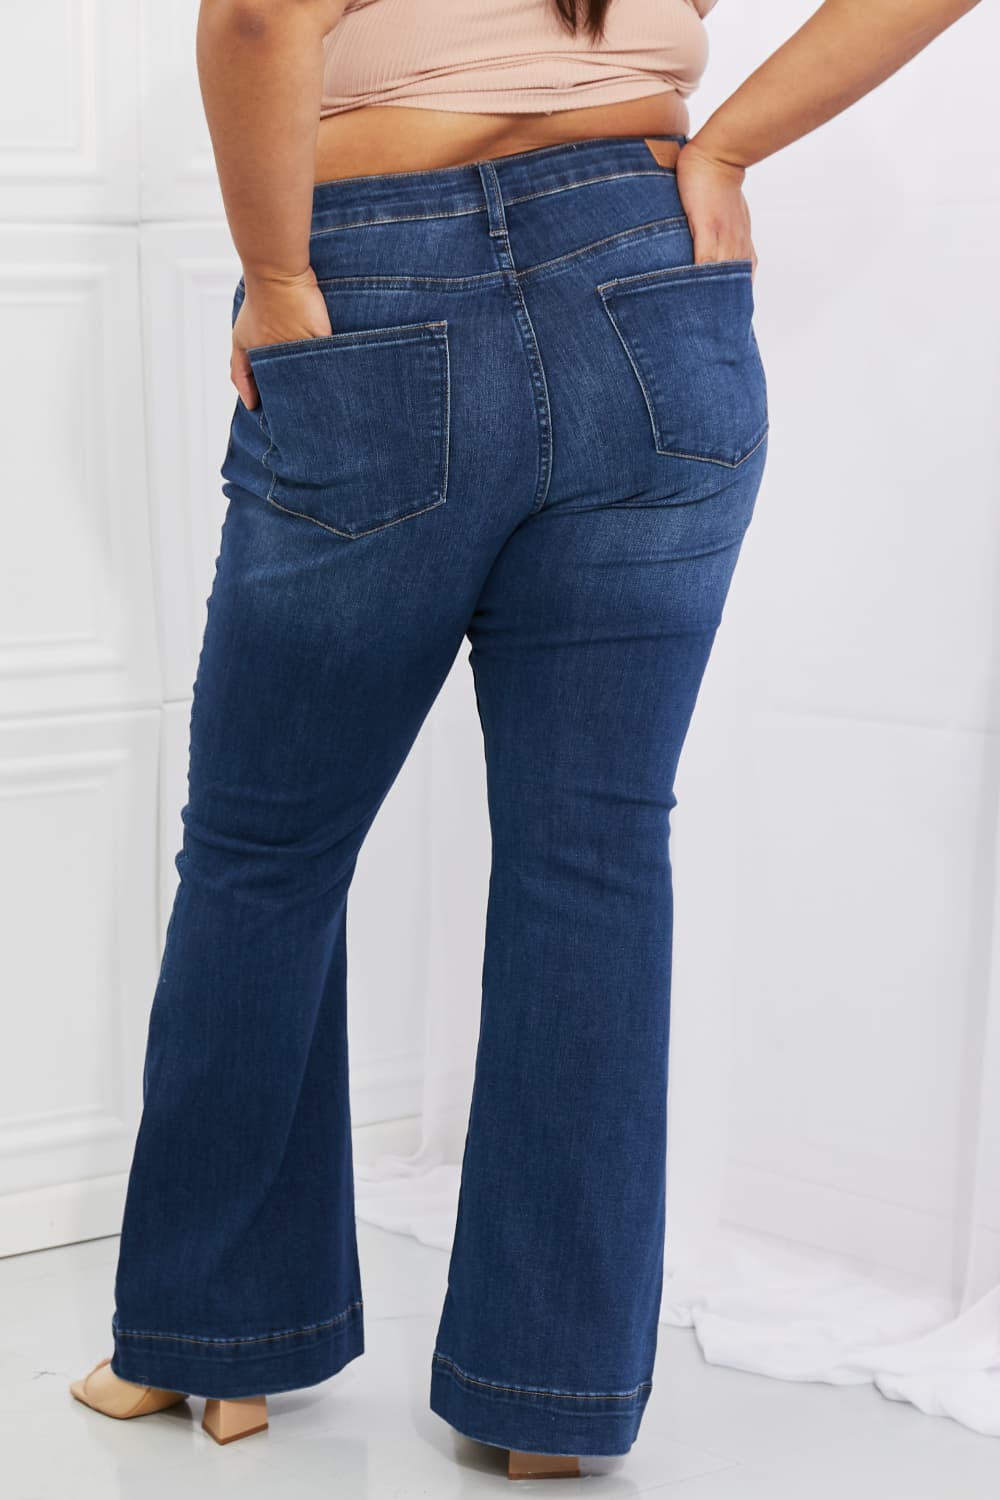 Judy Blue Olivia High Waisted Flare Jeans